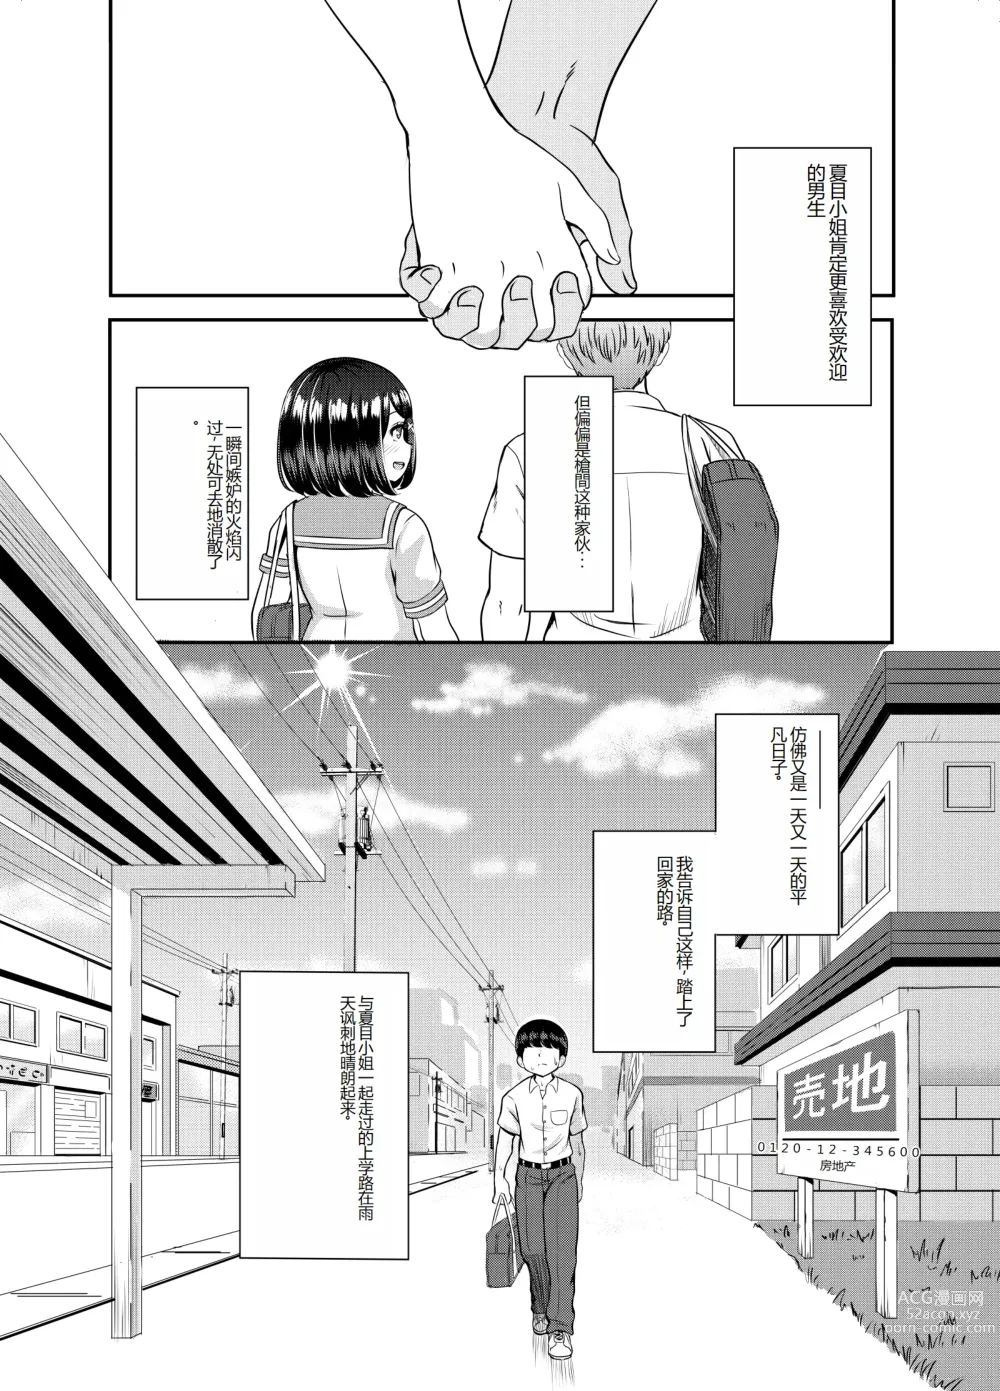 Page 62 of doujinshi 2-nen 3-kumi